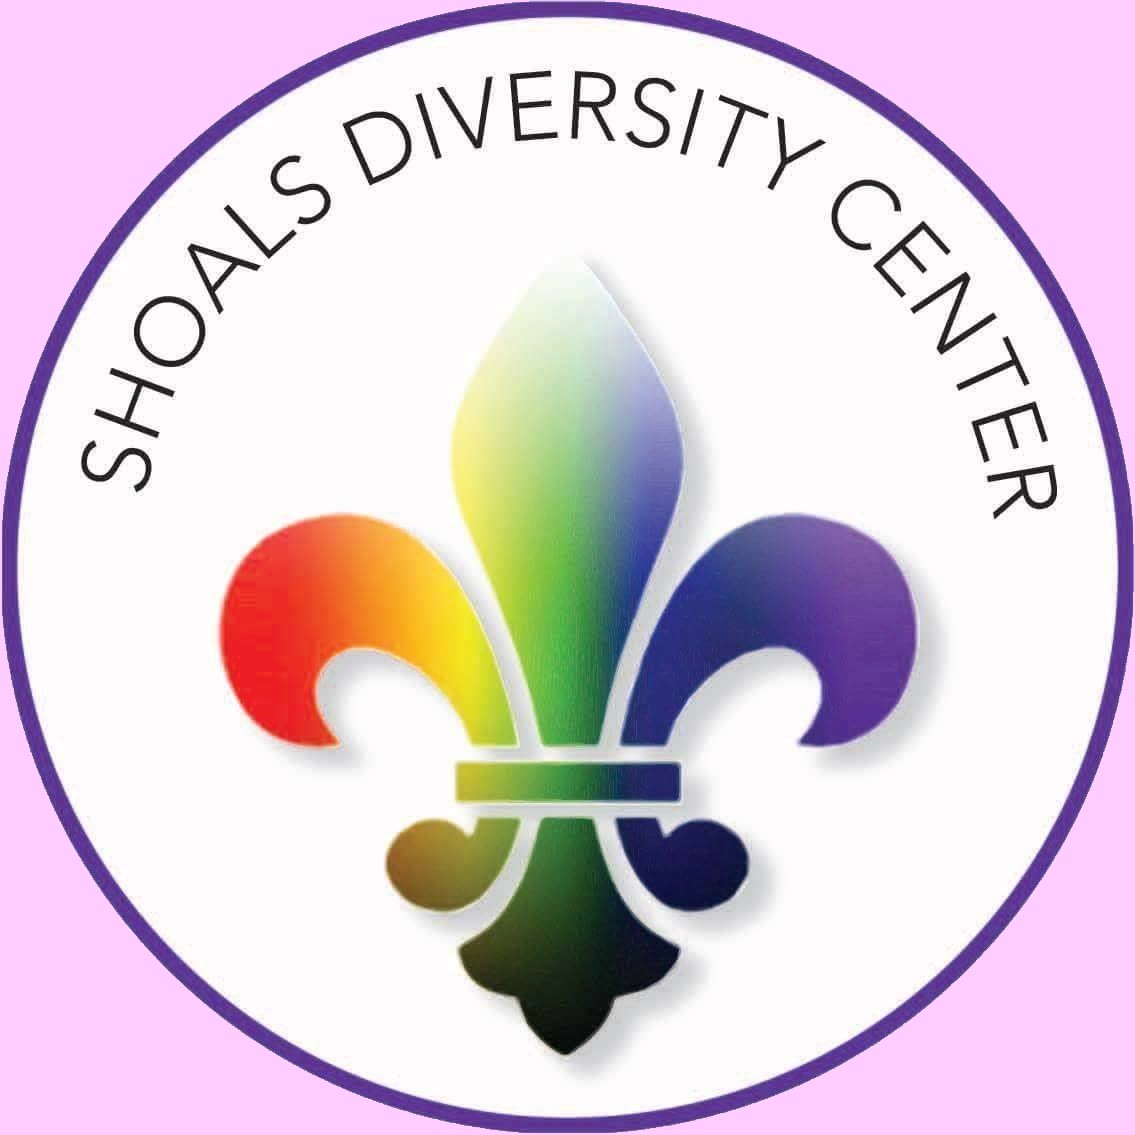 Shoals Diversity Center